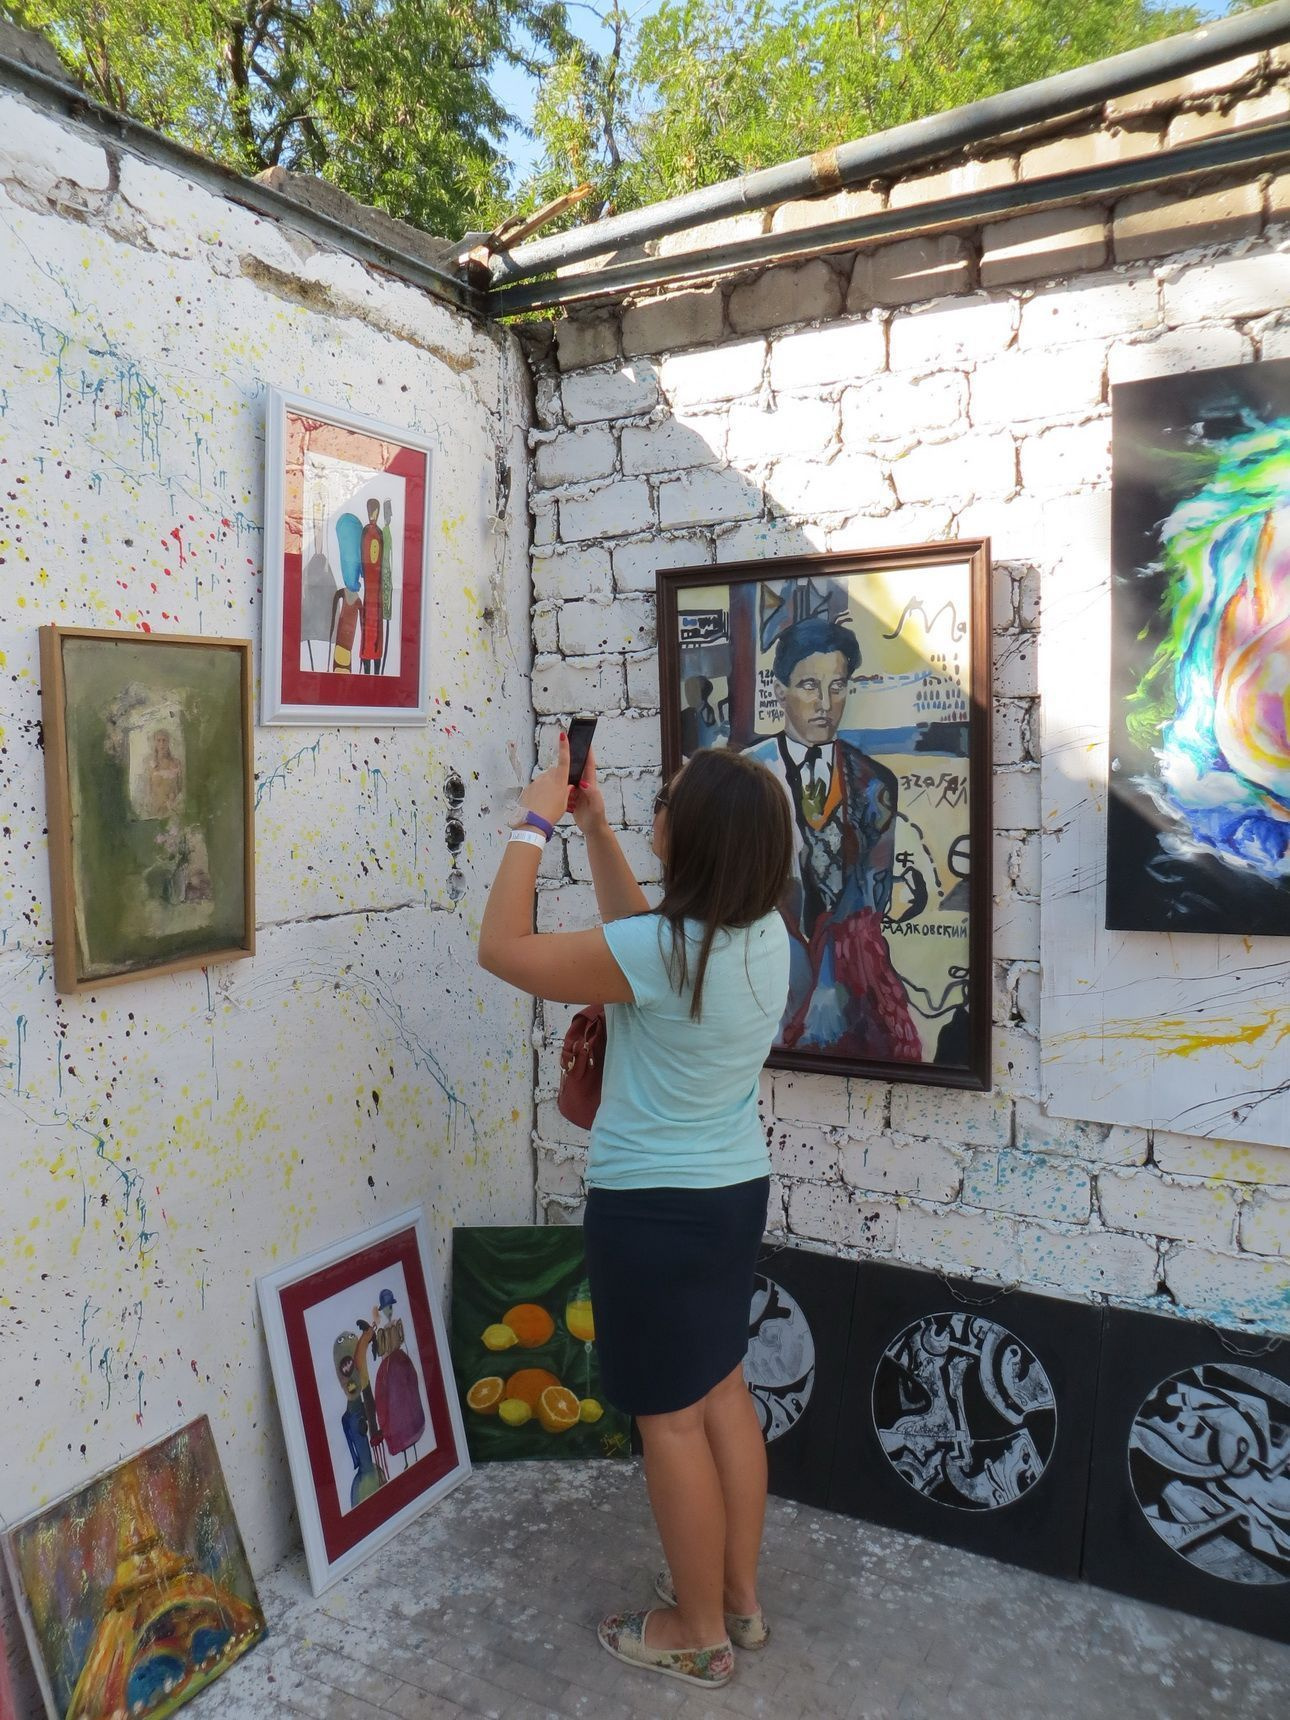 "Second hand современного искусства" в Одессе: солнце, майки, арт-пикник